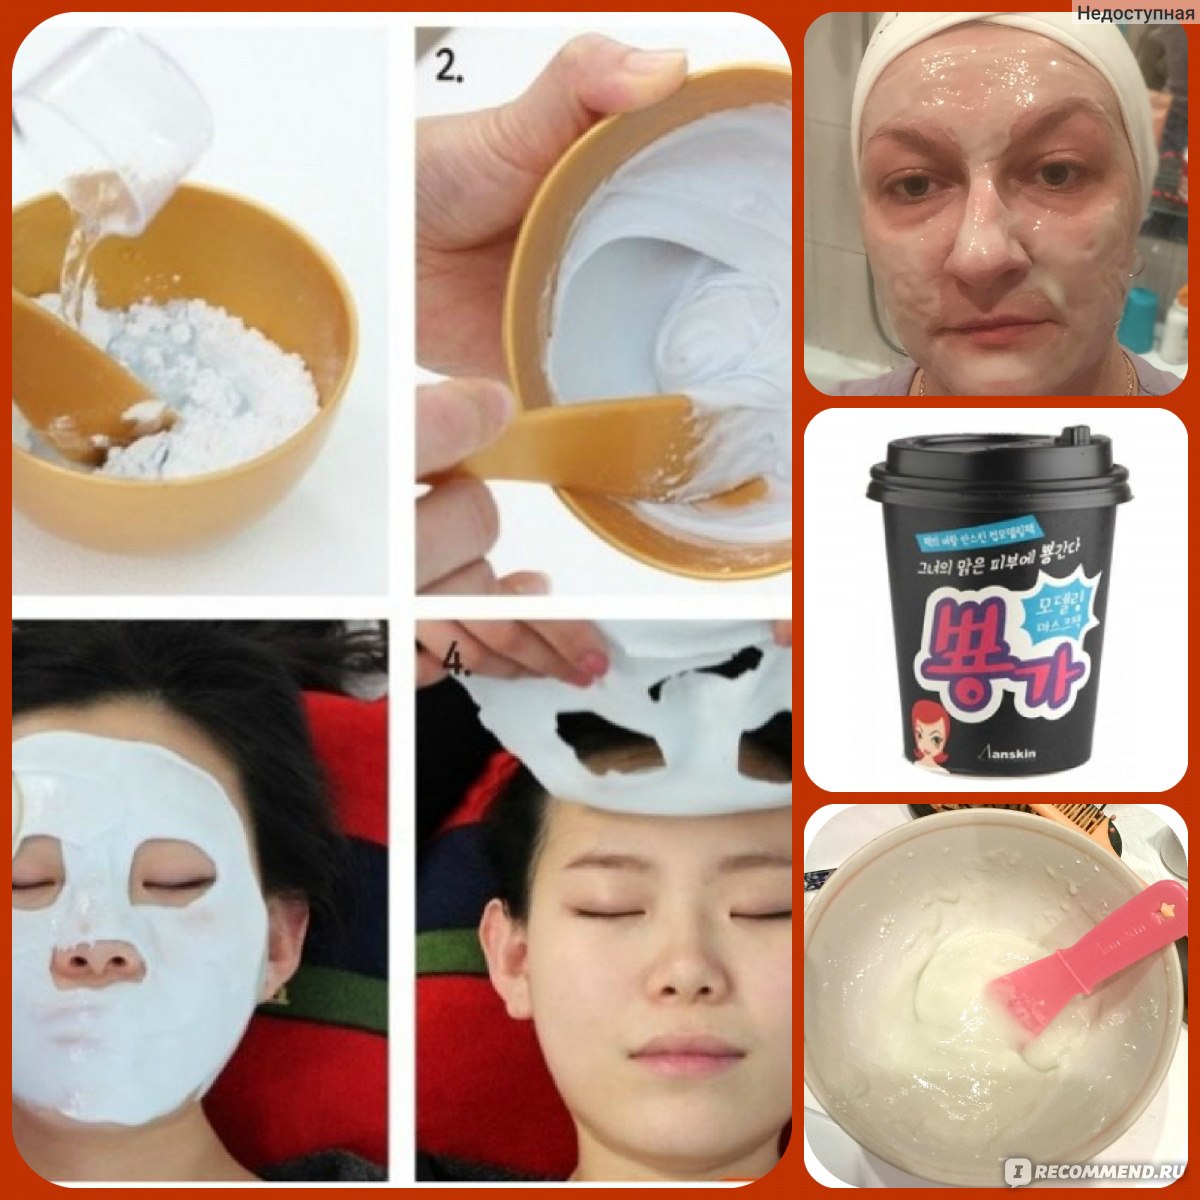 Альгинатная маска как использовать. Альгинатная маска кумихо. Альдегидная маска для лица Корея. Маски альгинатные для лица Корея.